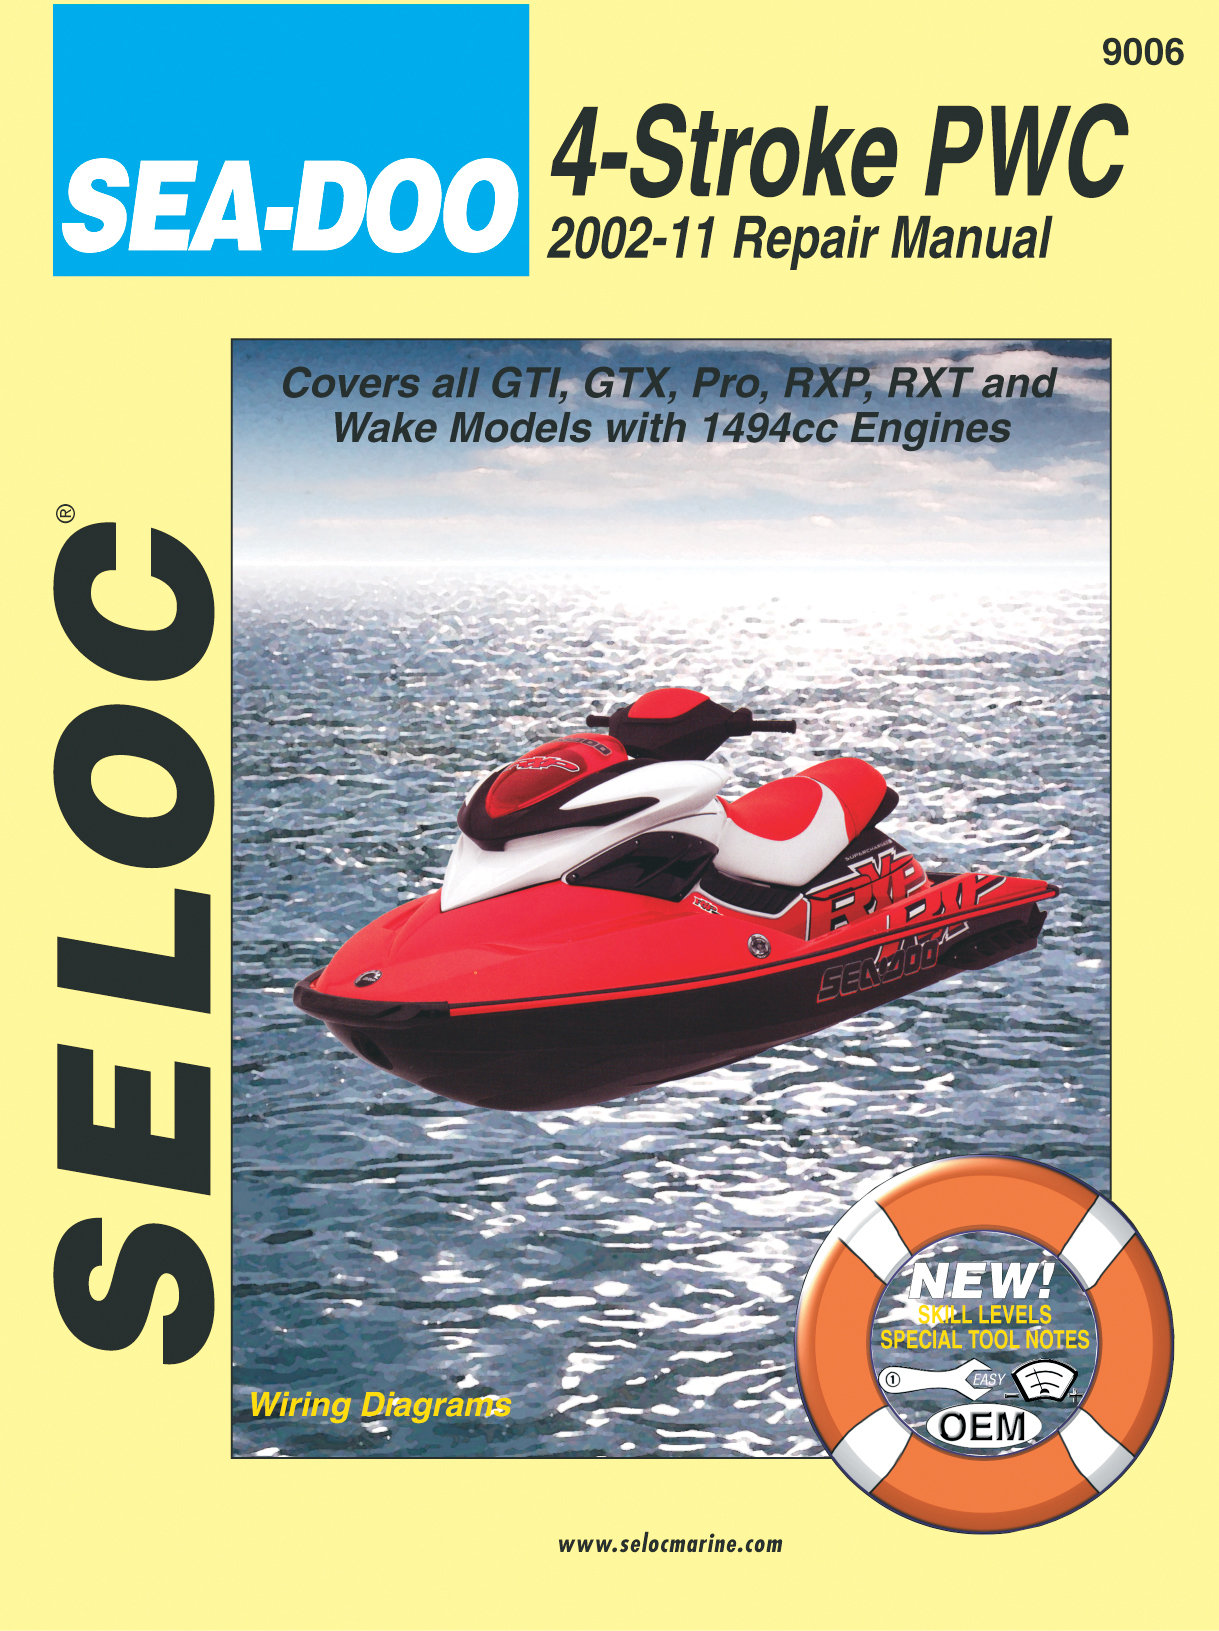 Werkstatthandbuch in englisch für Sea-Doo